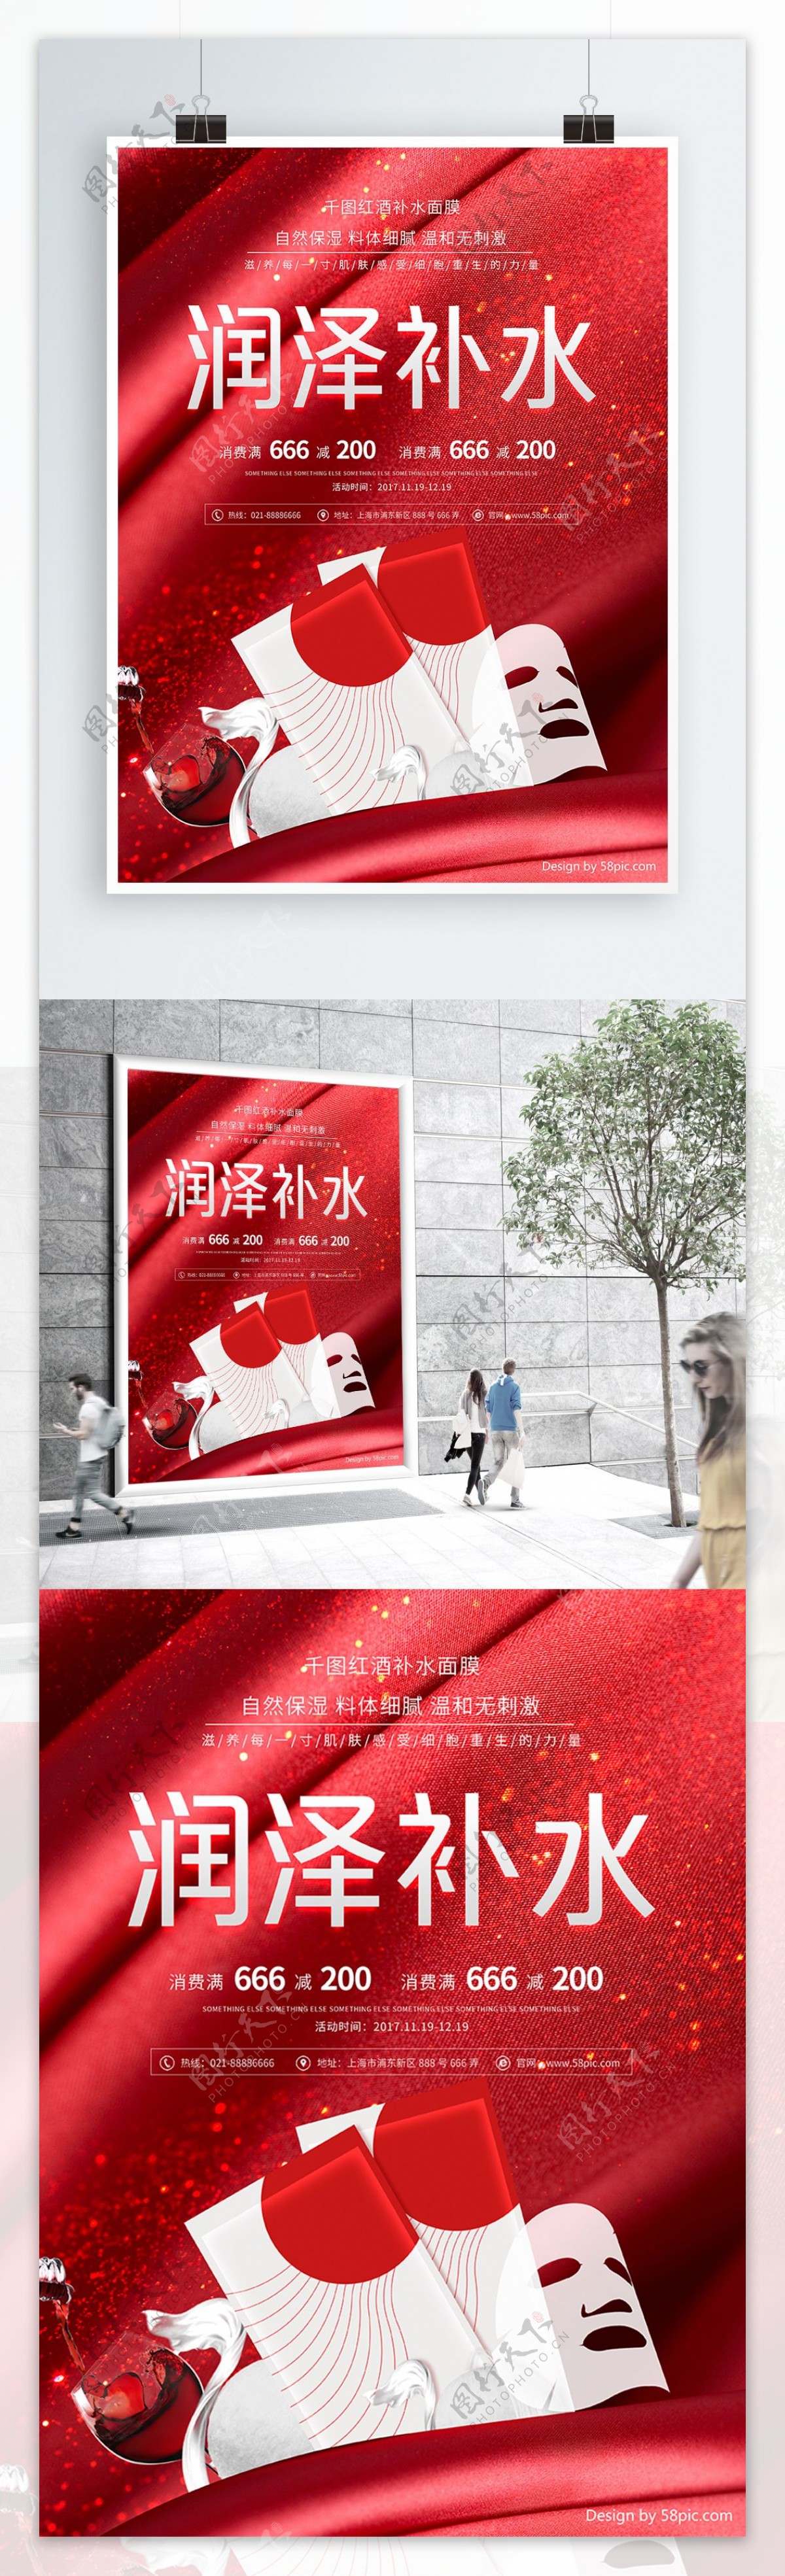 杭州亚运会核心图形发布：主题为“润泽”，灵感源自丝绸-搜狐大视野-搜狐新闻